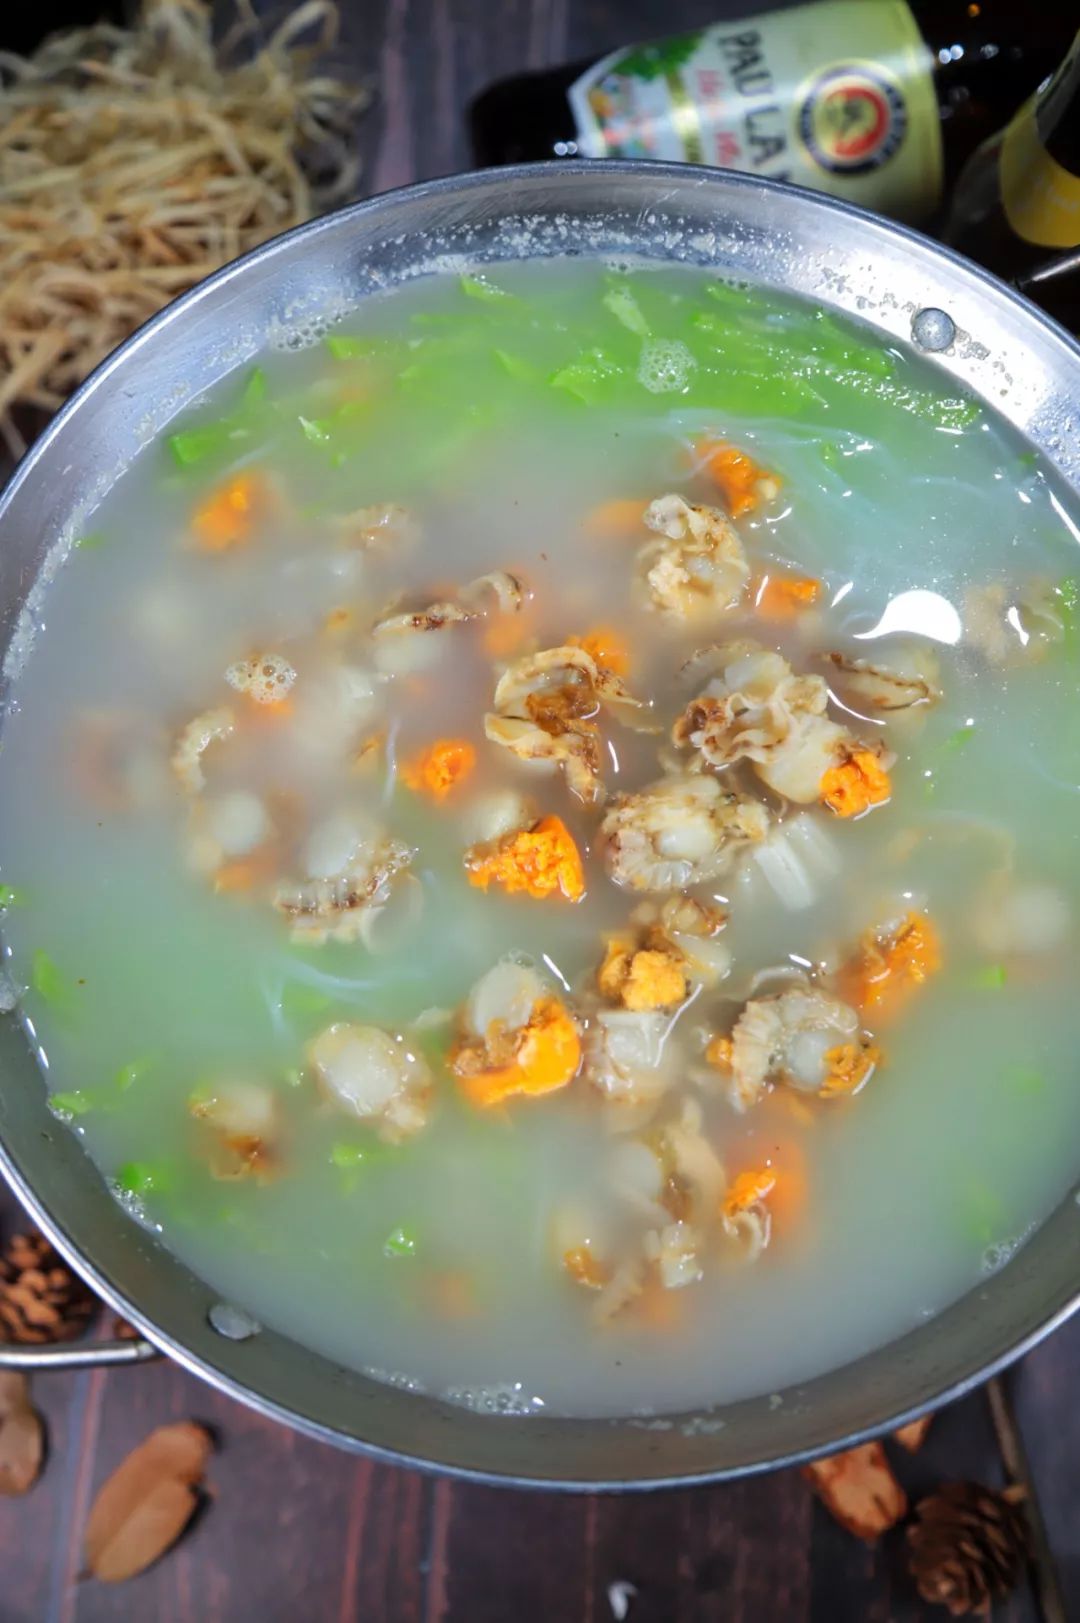 锅仔中包含全贝,青萝卜丝,粉丝,选用秘制高汤作为锅仔的汤底一起炖煮